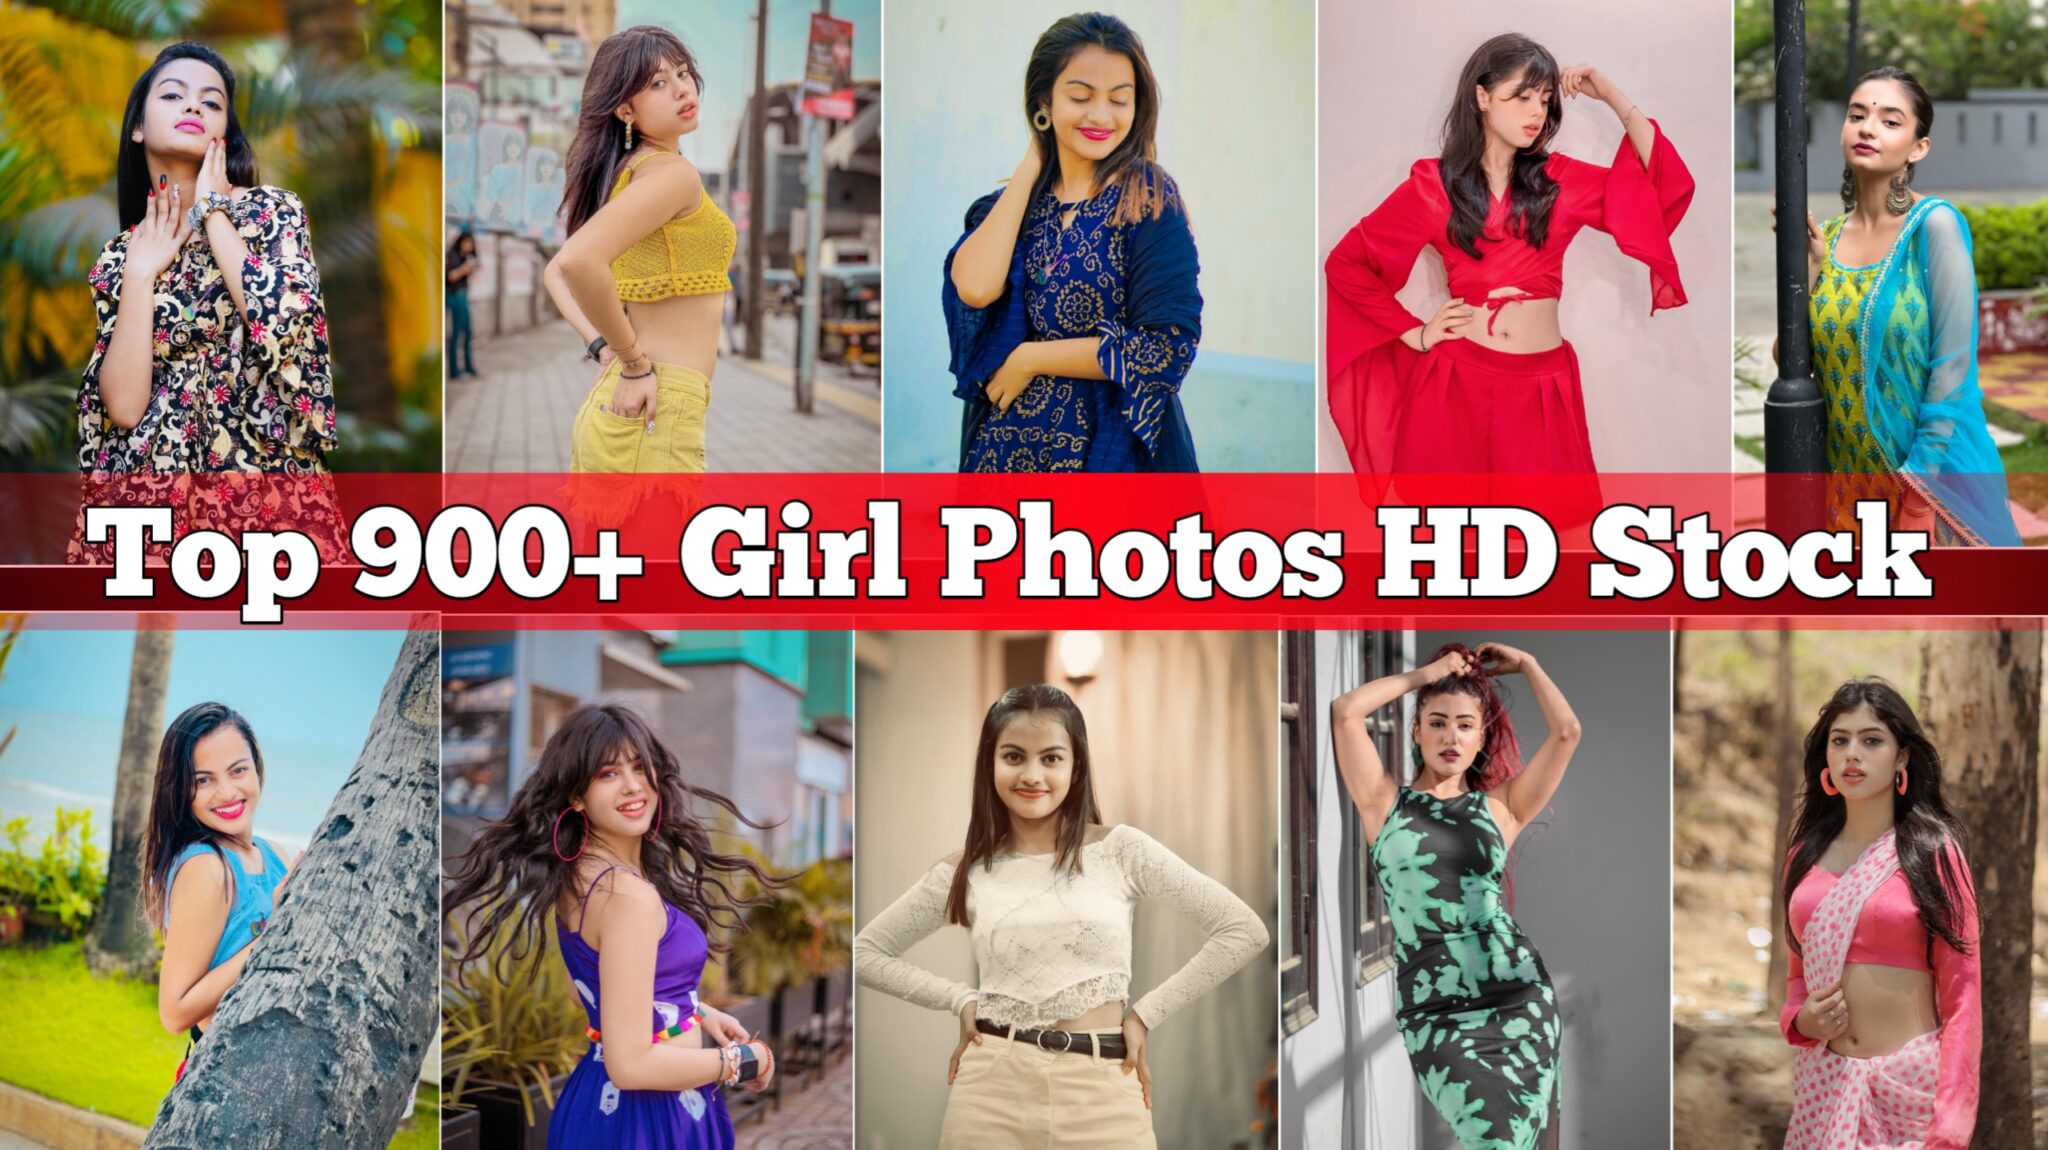 Top 900+ Girl Photos HD Stock | Girl Photos